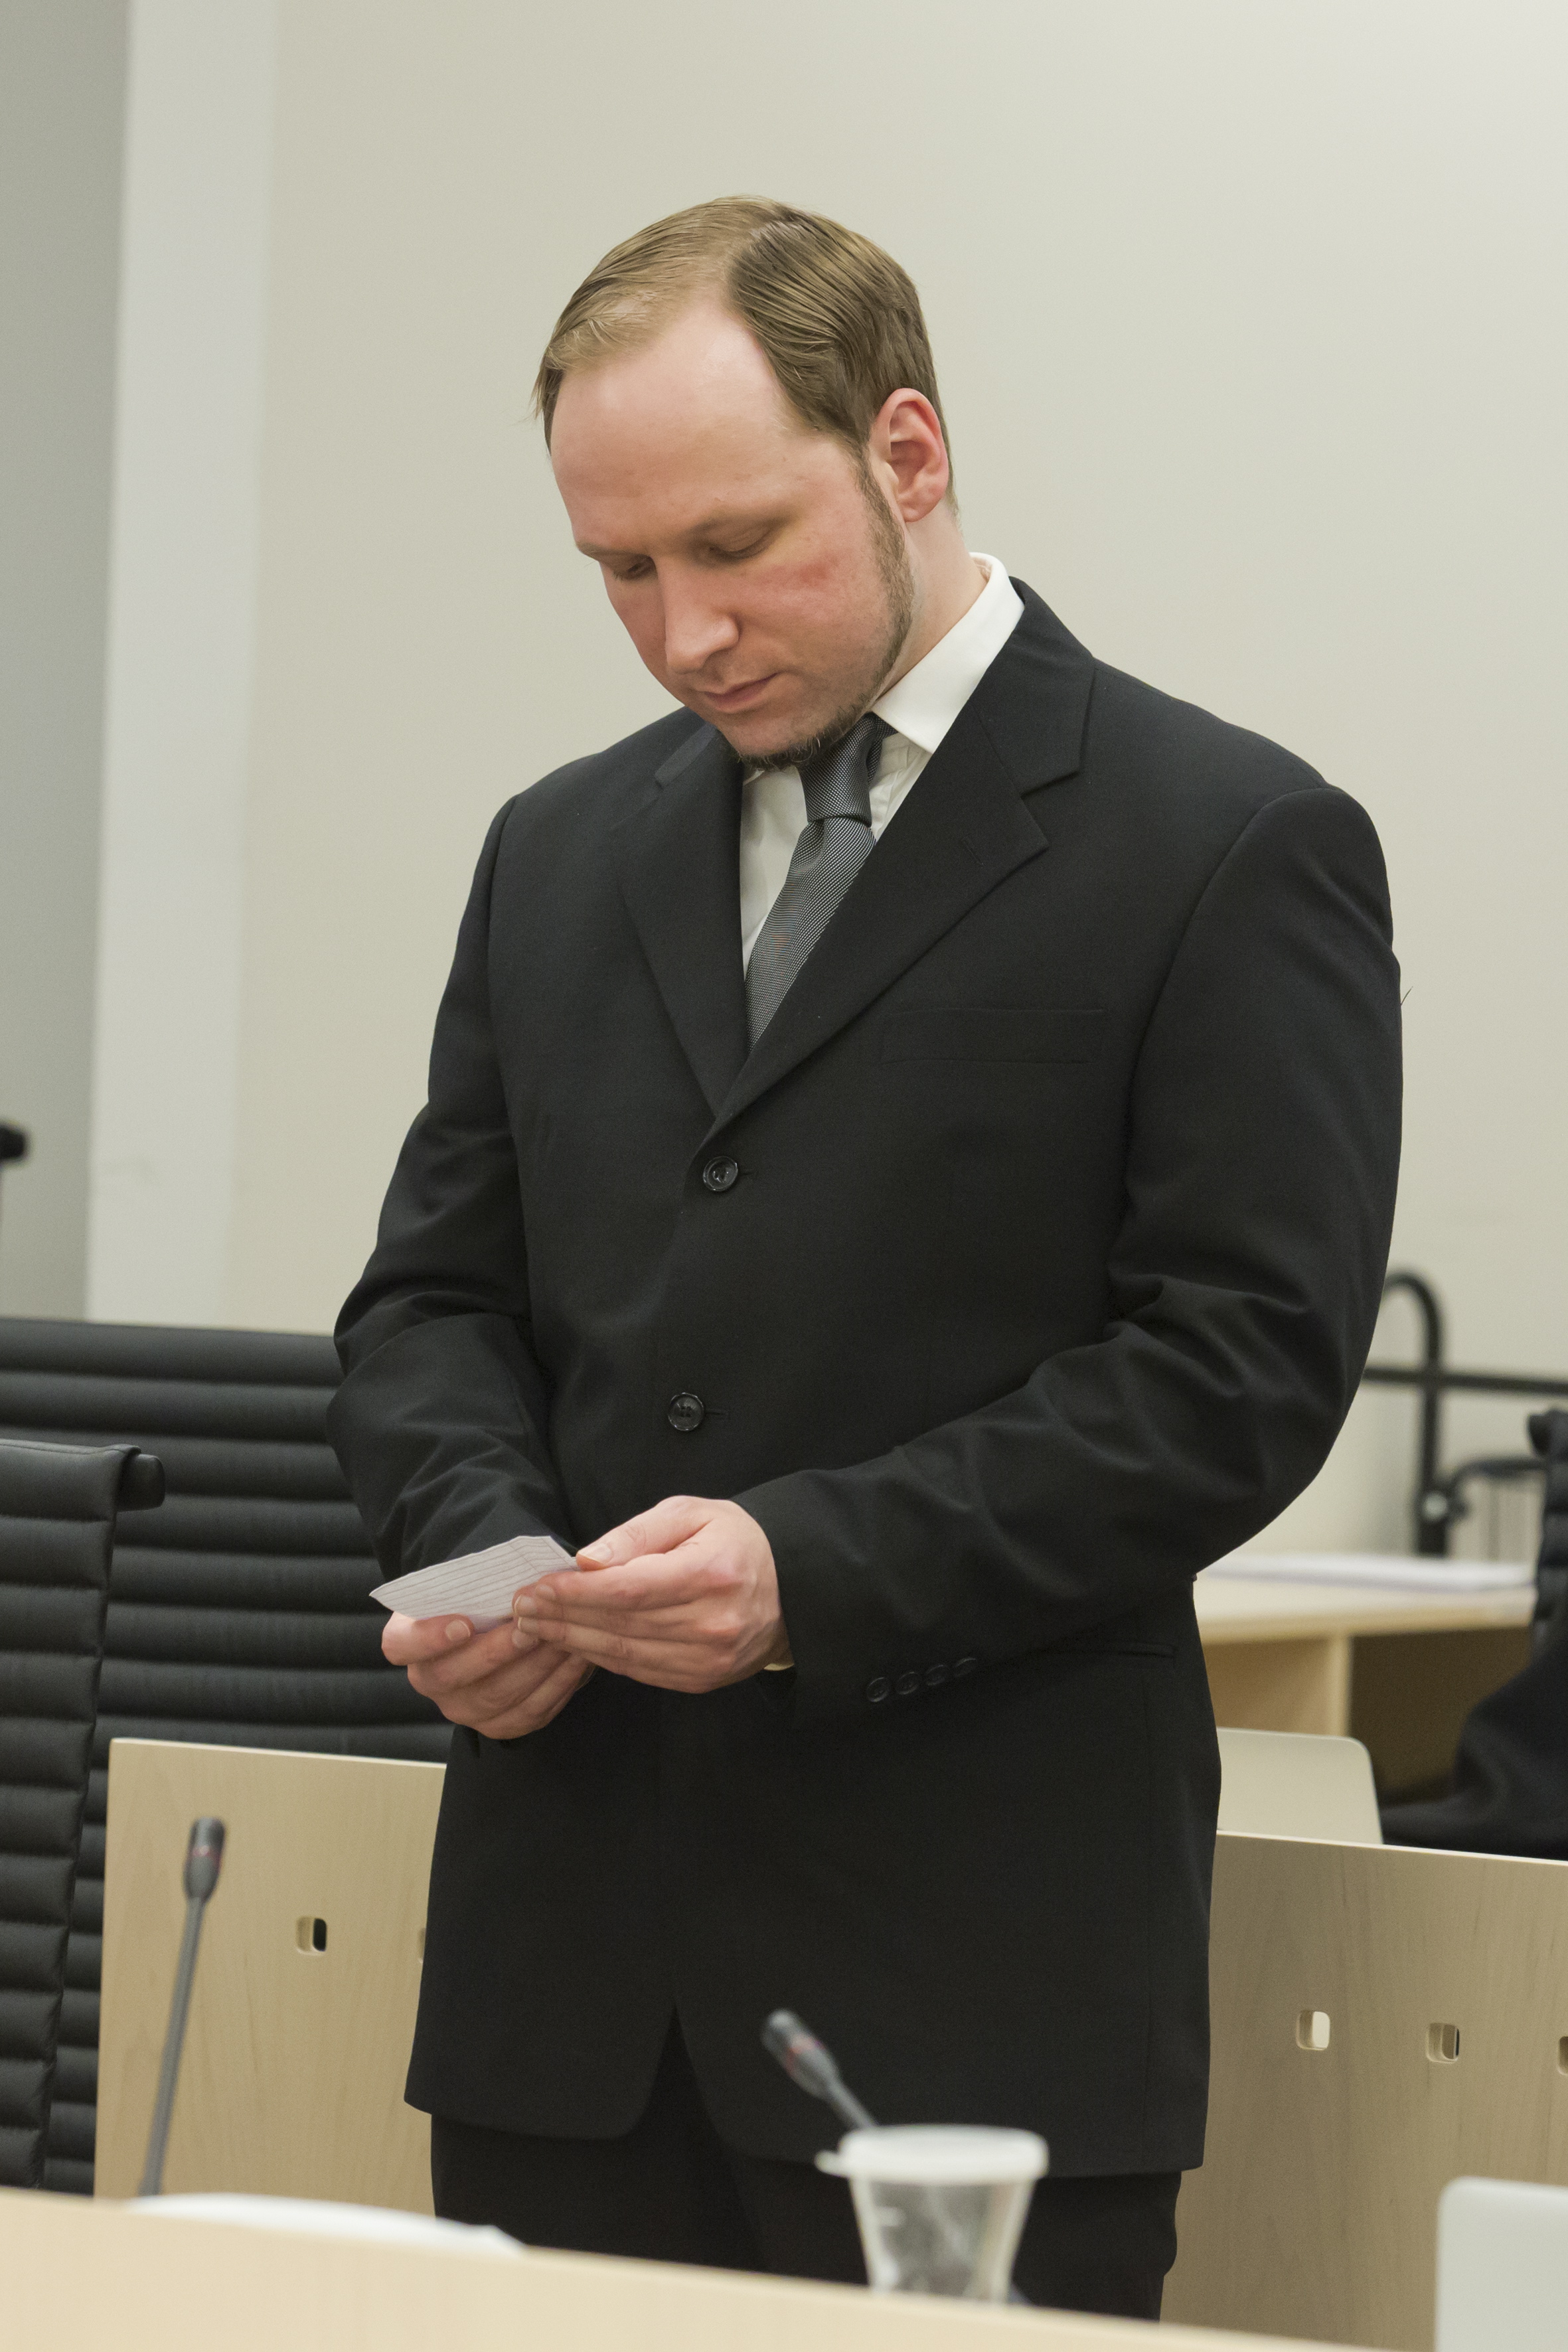 Massmördare, Anders Behring Breivik, Psyke, terrorist, Oslo